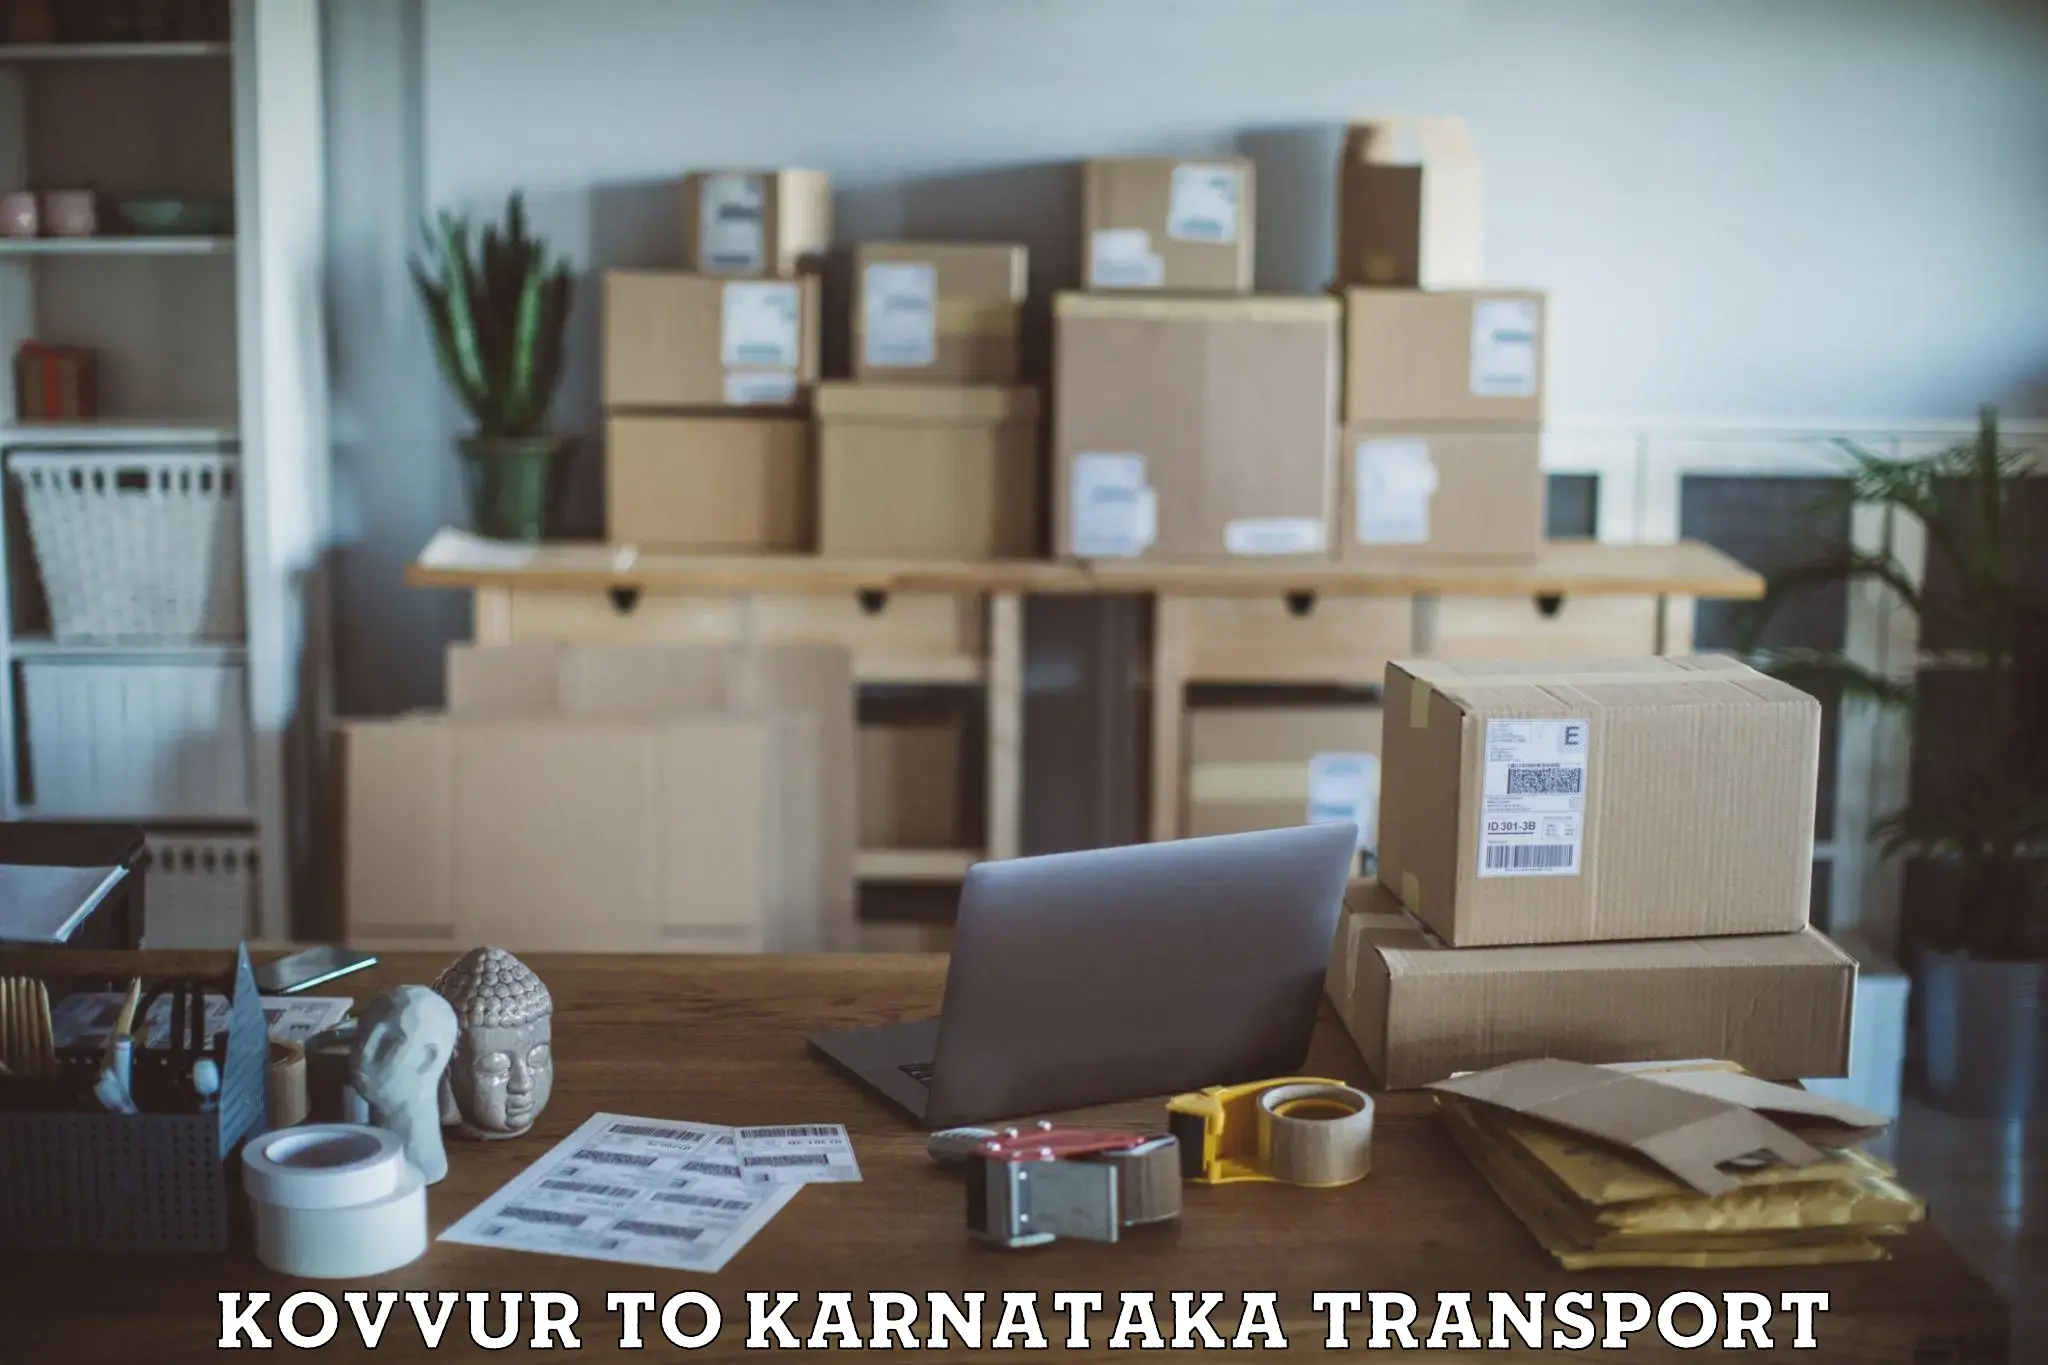 Commercial transport service Kovvur to Bagalkot